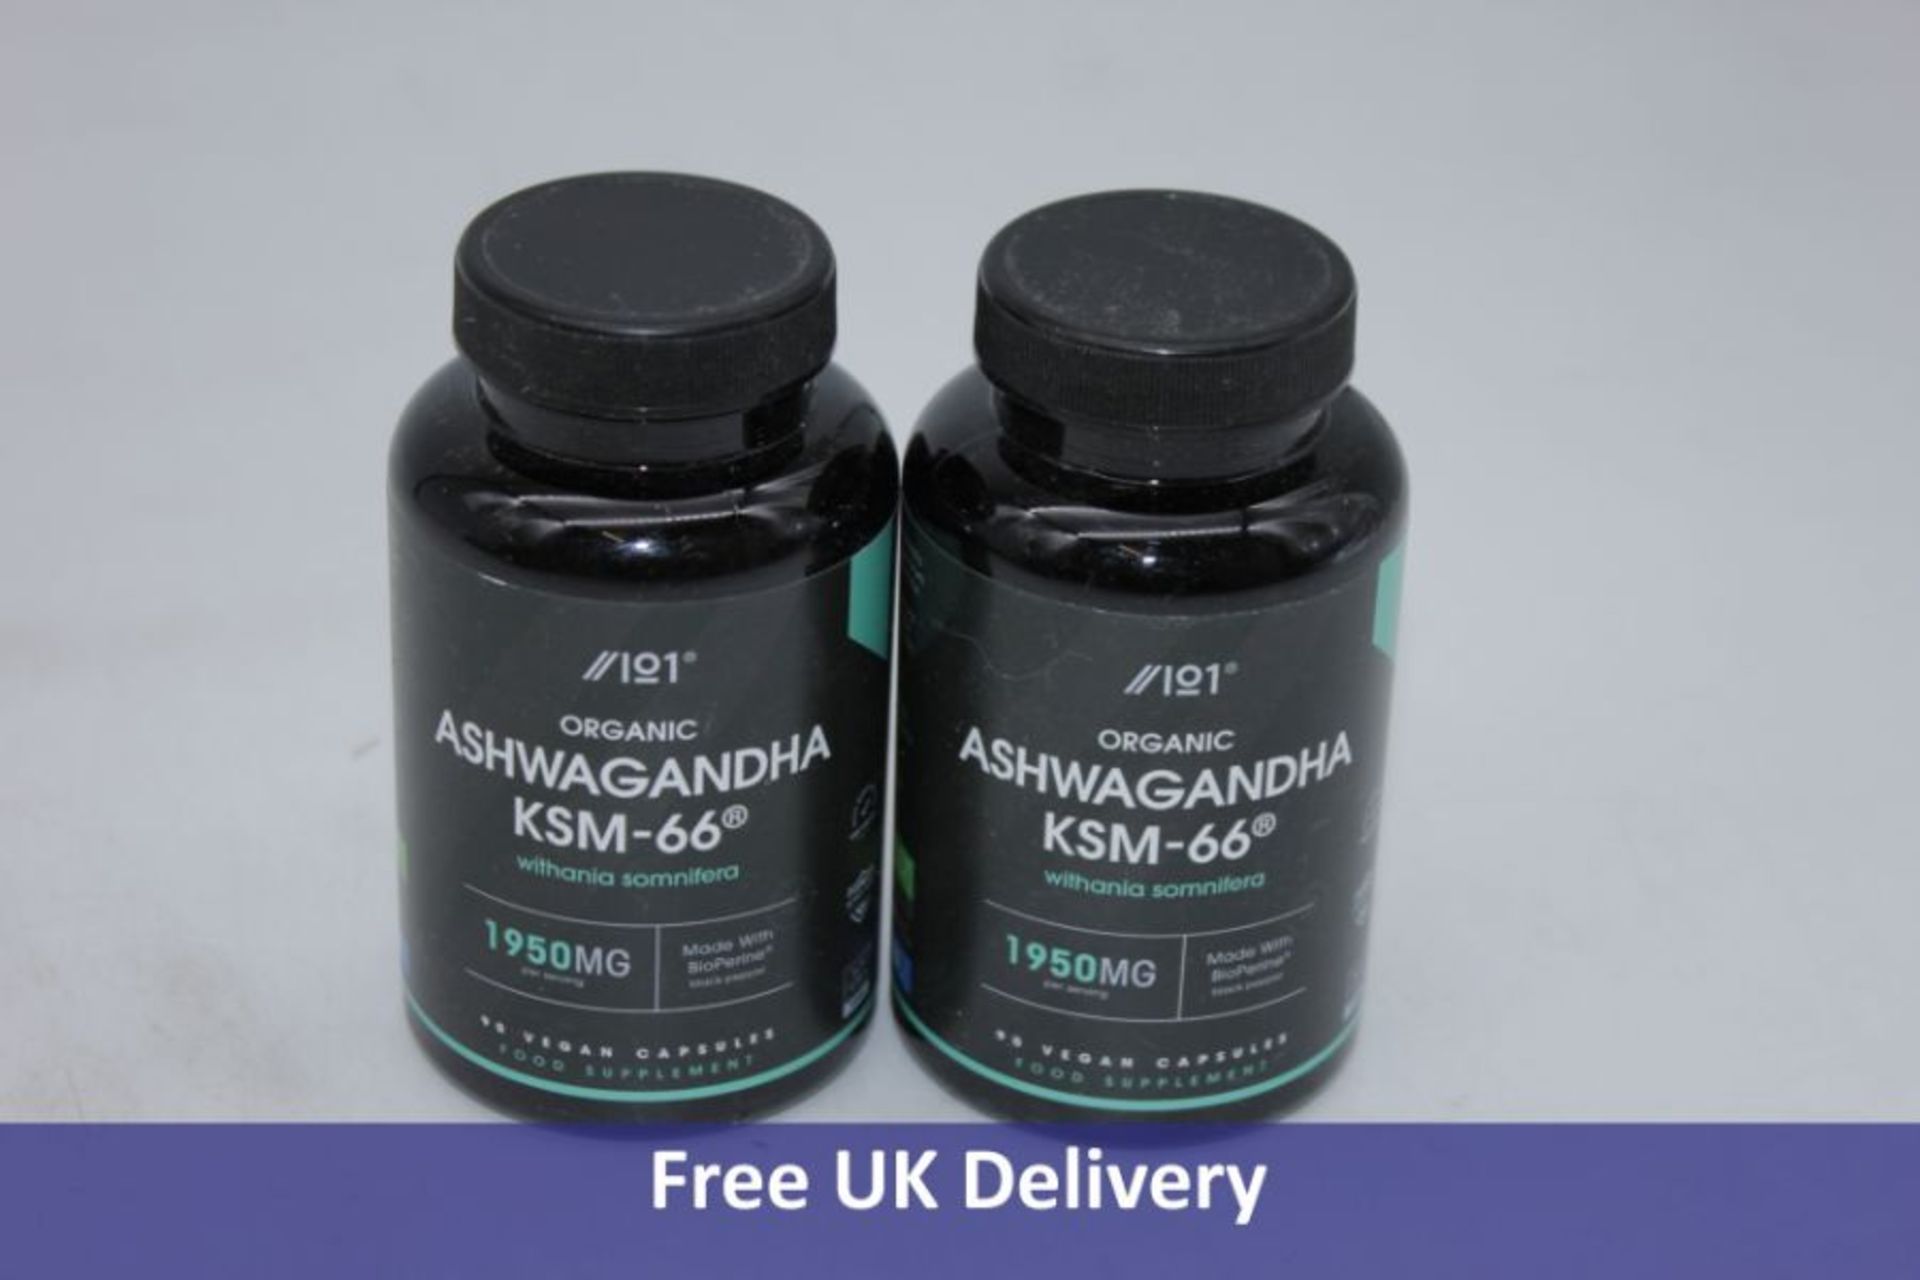 Five ‎ALPHA01 Ashwagandha KSM-66 Supplements, 30 Servings per Bottle